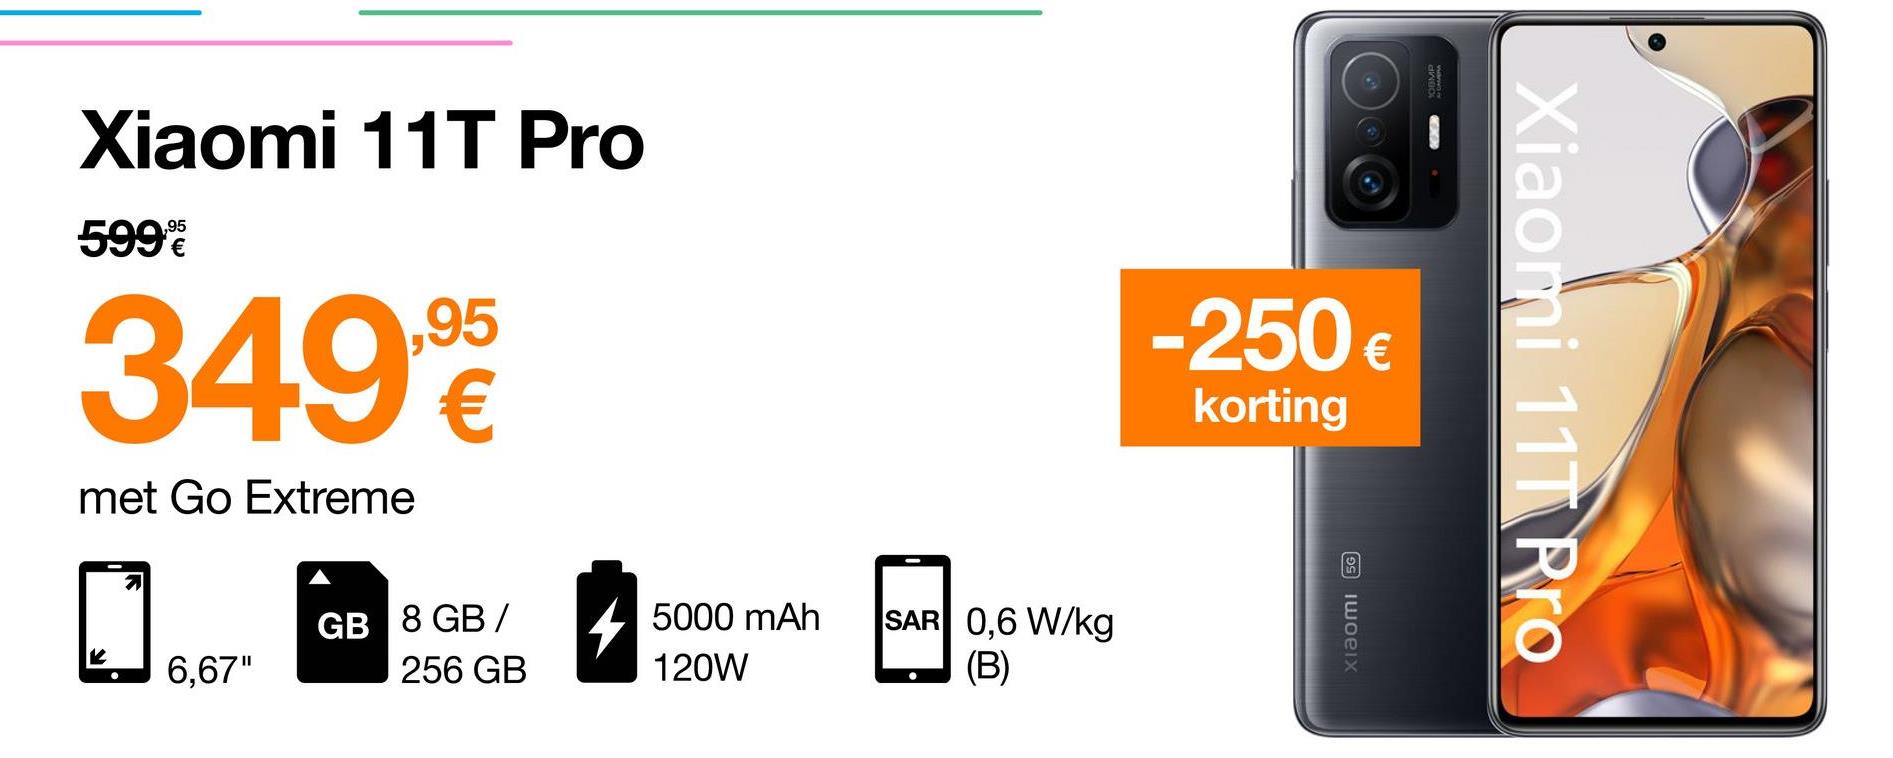 Xiaomi 11T Pro
,95
599
349
,95
€
-250 €
€
korting
Xiaomi 11T Pro
met Go Extreme
GB 8 GB /
256 GB
4
5000 mAh
120W
SAR 0,6 W/kg
(B)
Xiaomi 56
6,67"
